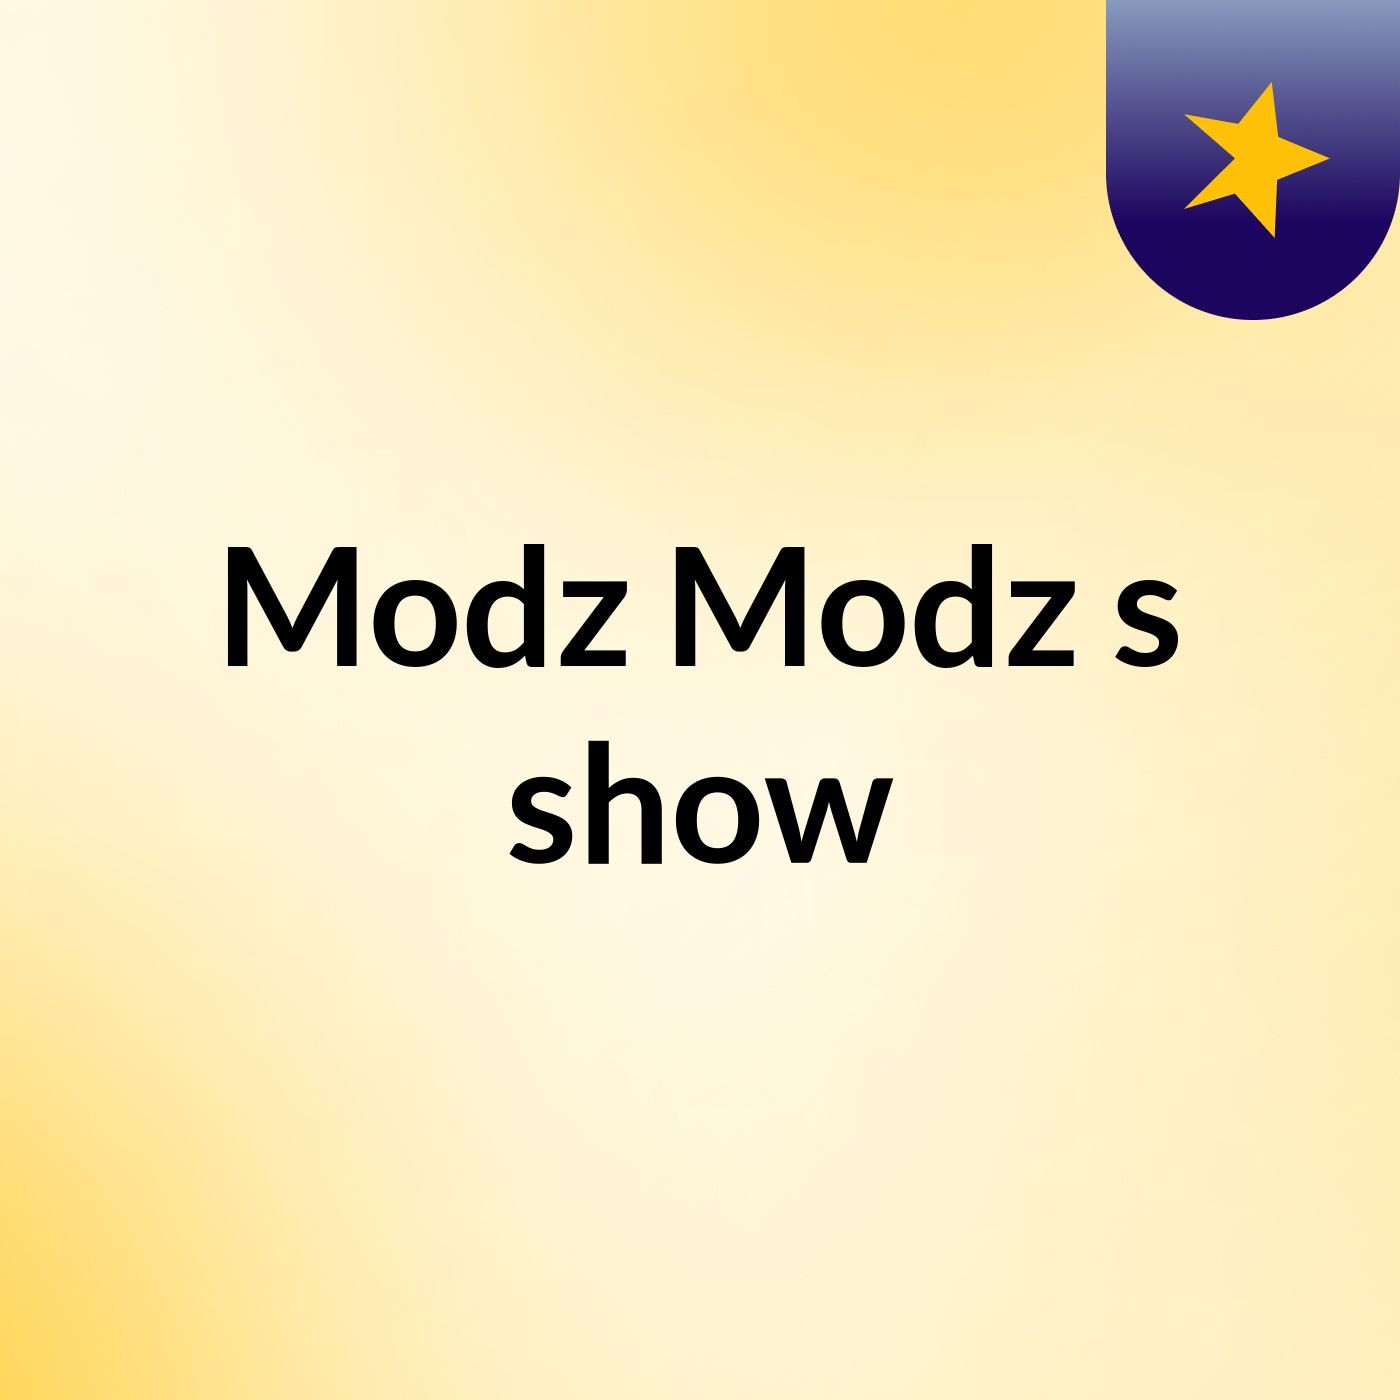 Modz Modz's show